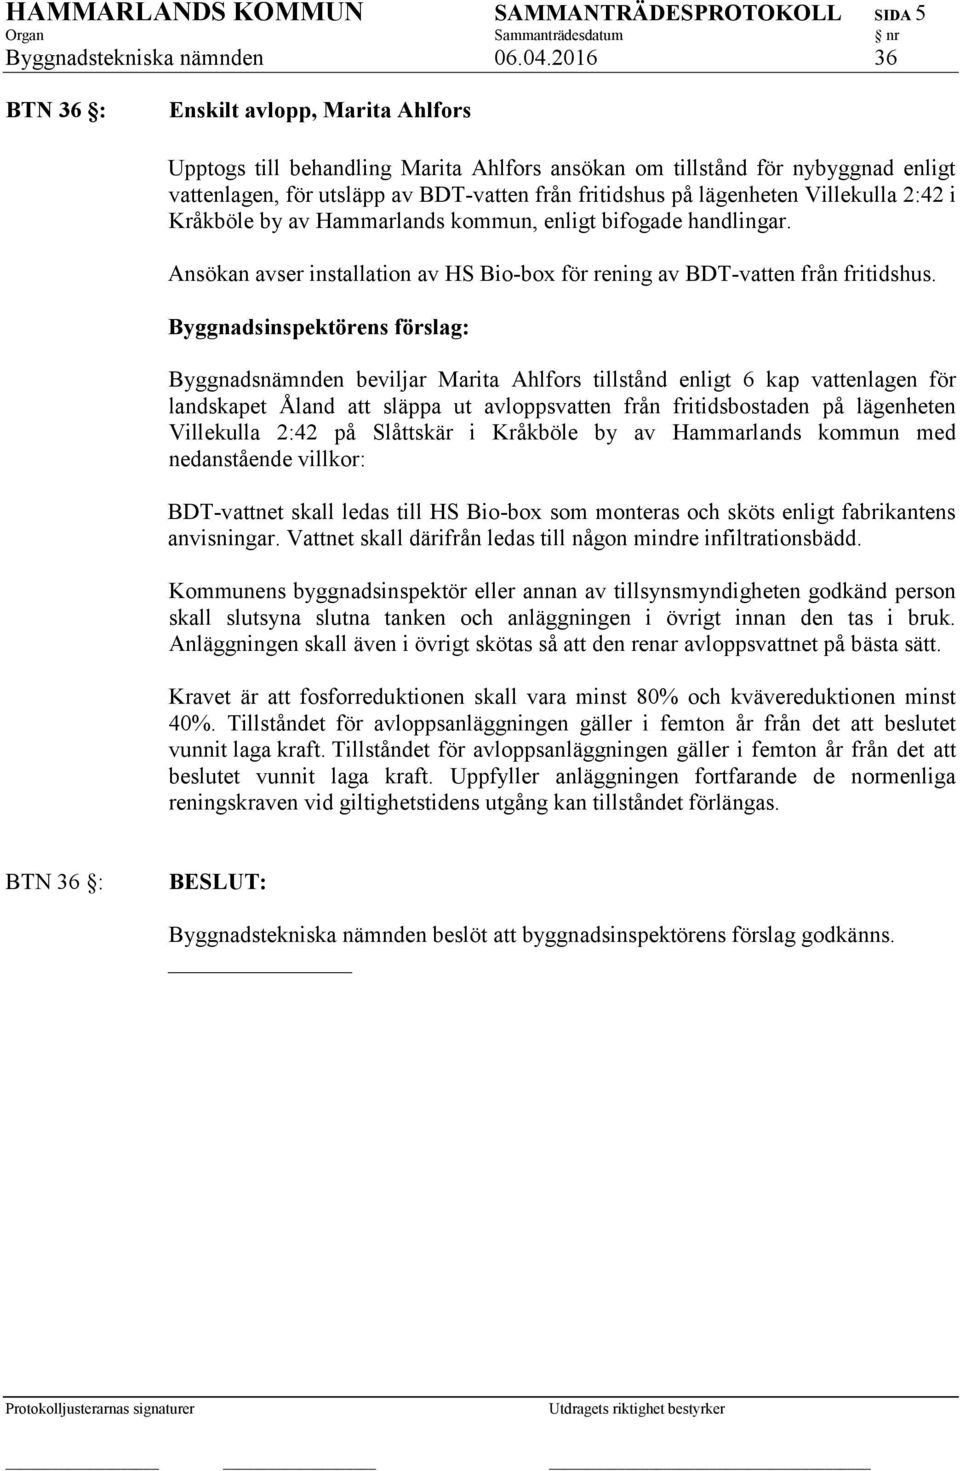 Villekulla 2:42 i Kråkböle by av Hammarlands kommun, enligt bifogade handlingar. Ansökan avser installation av HS Bio-box för rening av BDT-vatten från fritidshus.